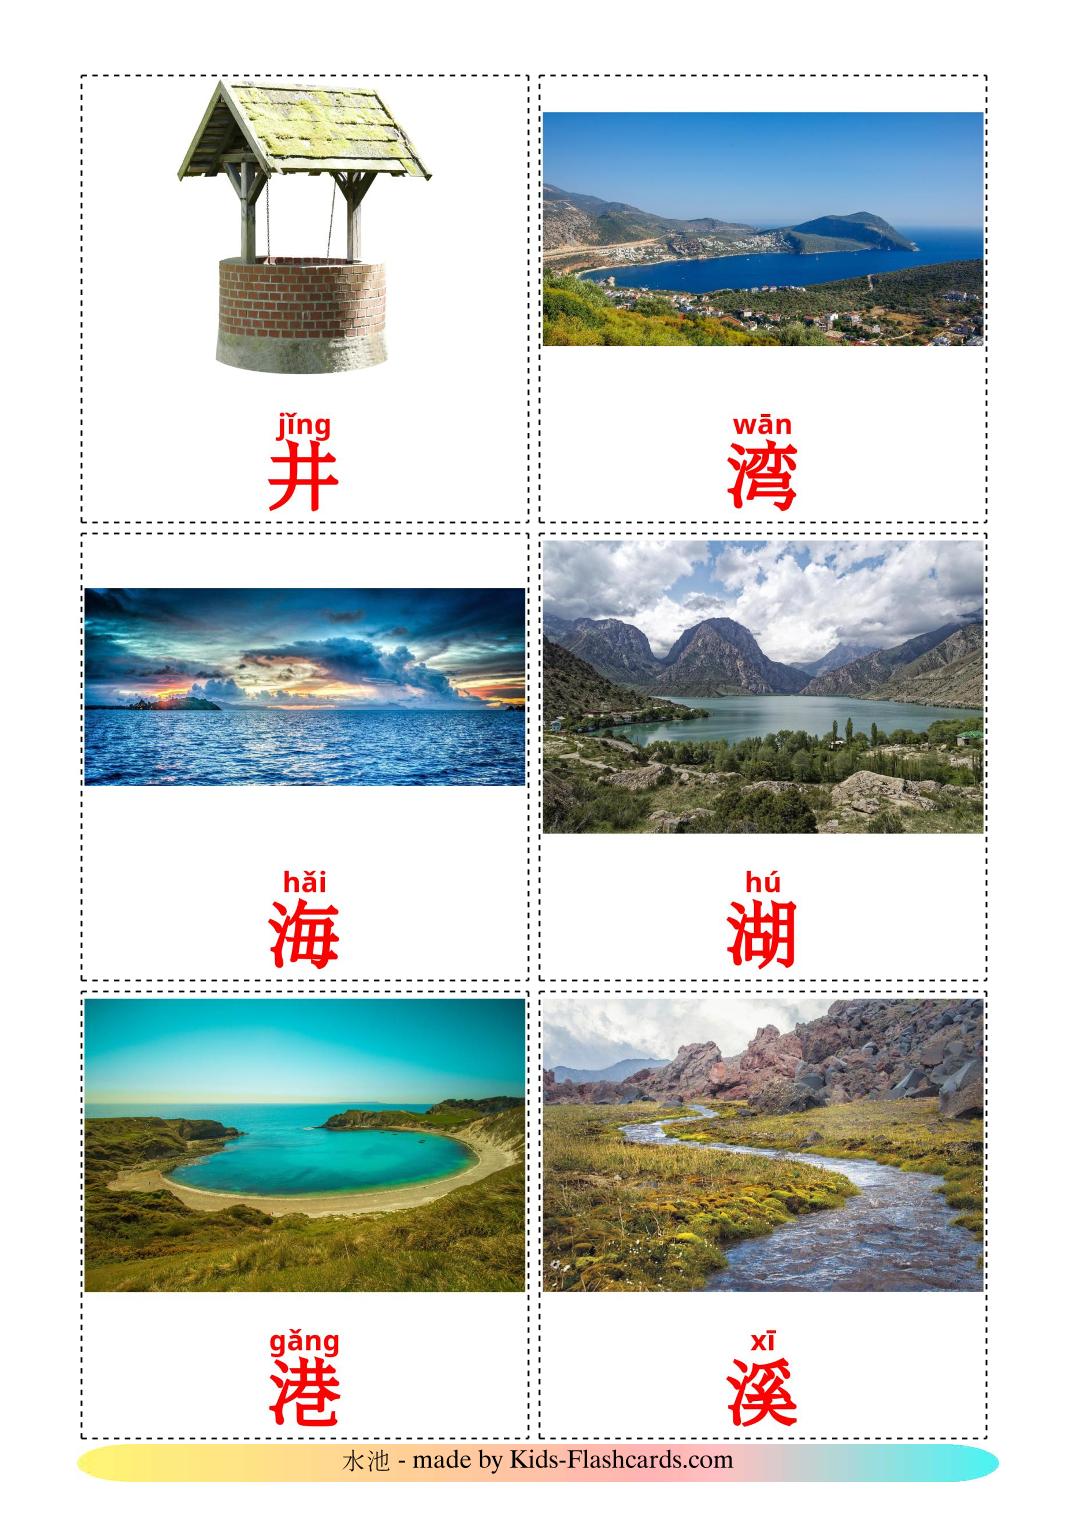 Cuerpos de agua - 30 fichas de chino(simplificado) para imprimir gratis 